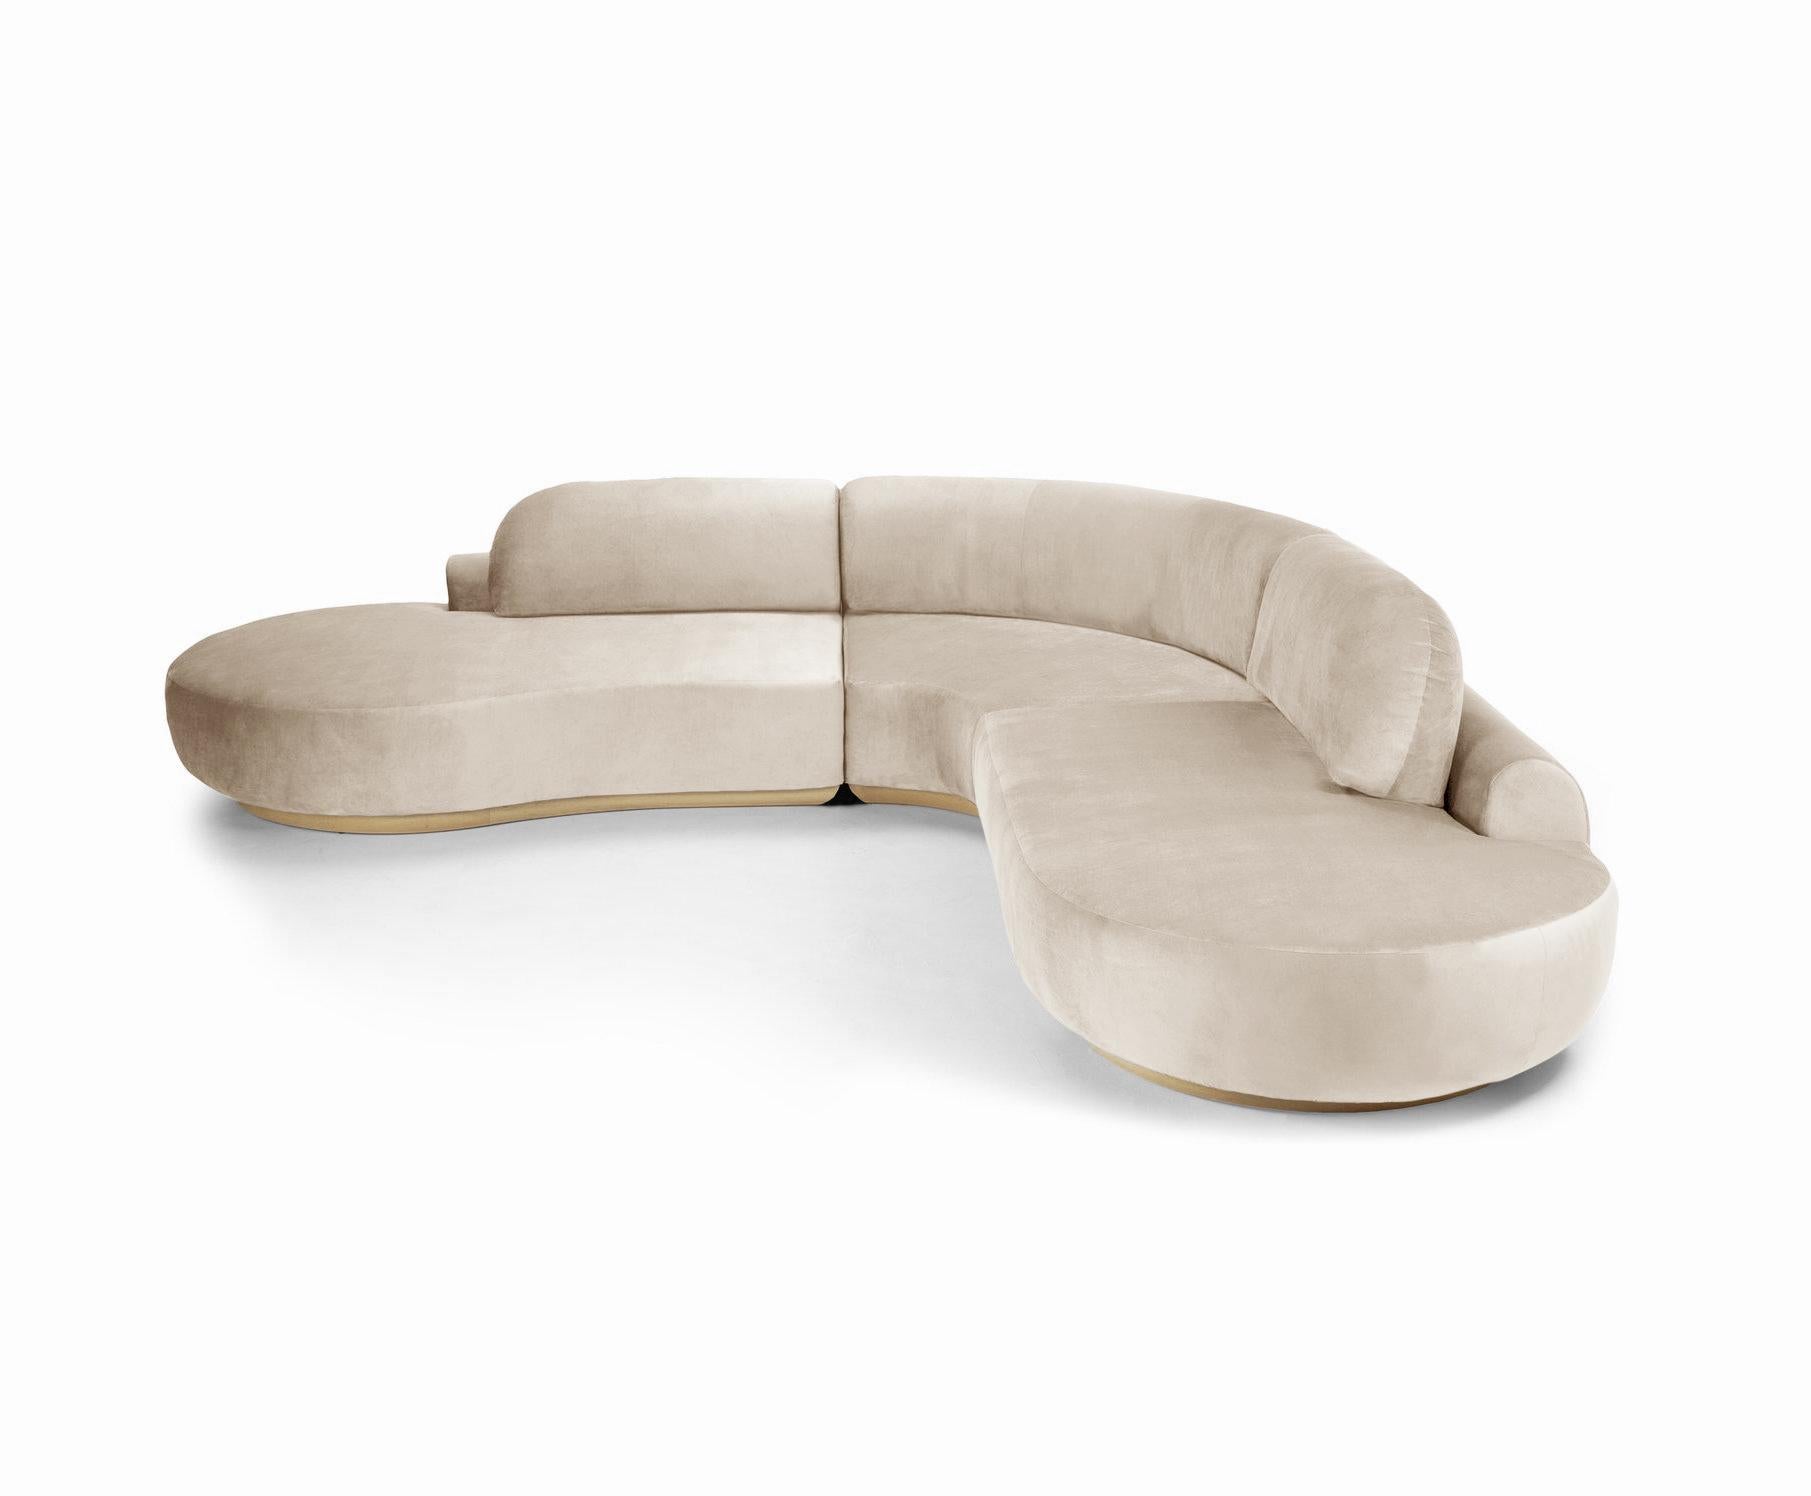 Le canapé sectionnel Naked est un canapé modulaire aux courbes accueillantes et à l'assise confortable. Fabriqué à la main avec une base en bois massif. Le canapé sectionnel Naked est disponible dans un certain nombre de matériaux, de finitions et